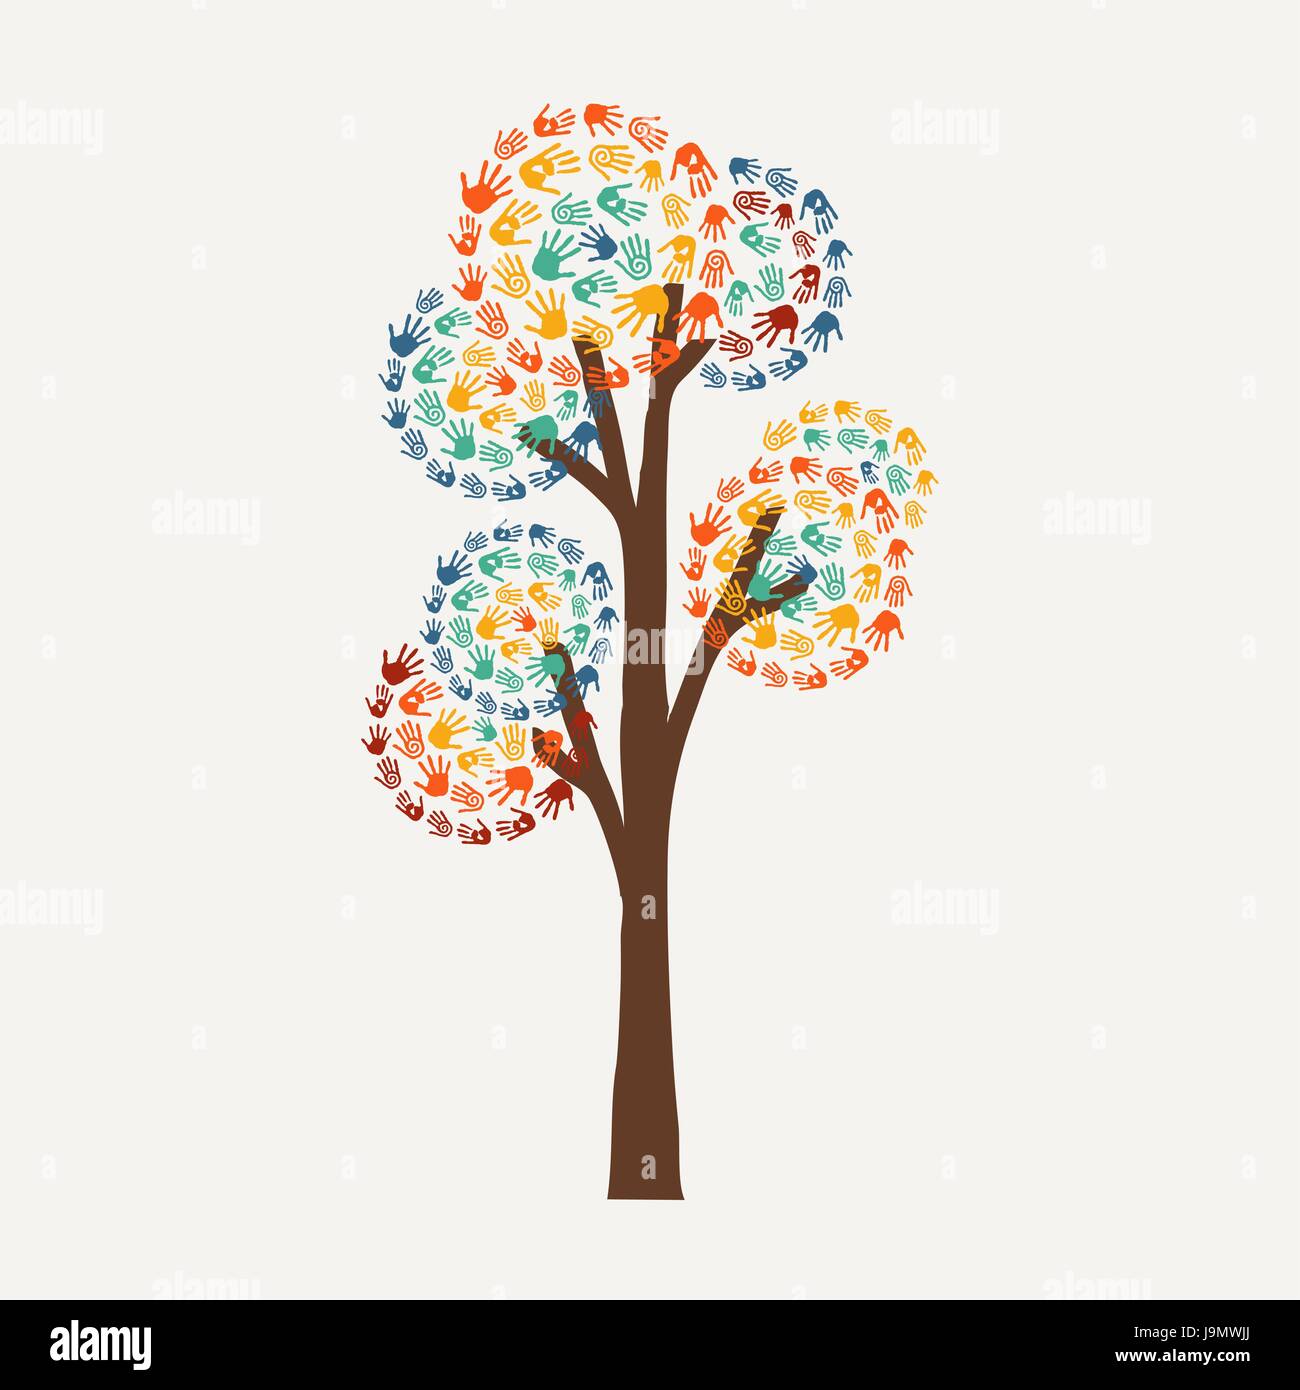 Lato albero simbolo con handprint multicolore art. Diverse comunità nozione illustrazione per aiuto sociale, ambiente progetto o di carità. EPS10 vettore. Illustrazione Vettoriale